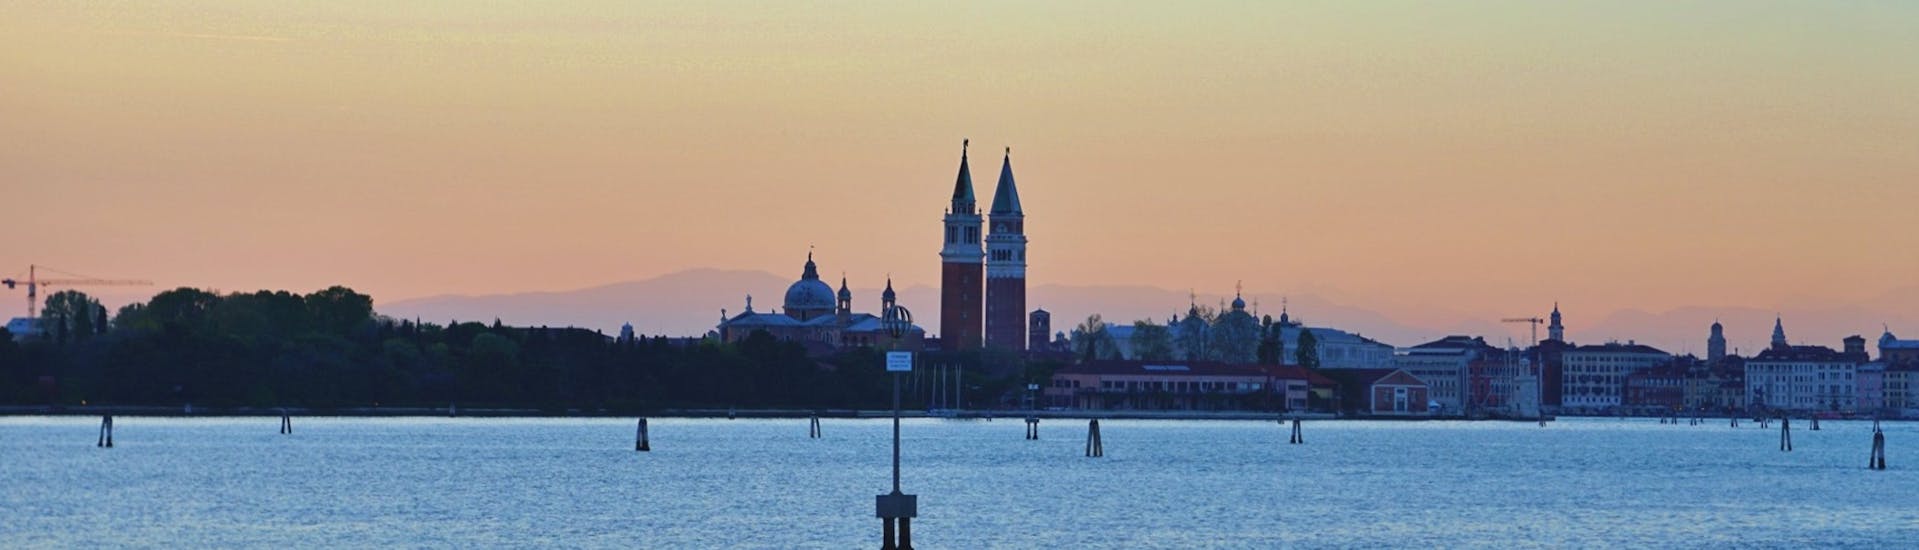 Vue de Venise depuis le bateau au coucher du soleil lors de la balade en bateau en fin de journée à Venise avec Il Doge di Venezia.